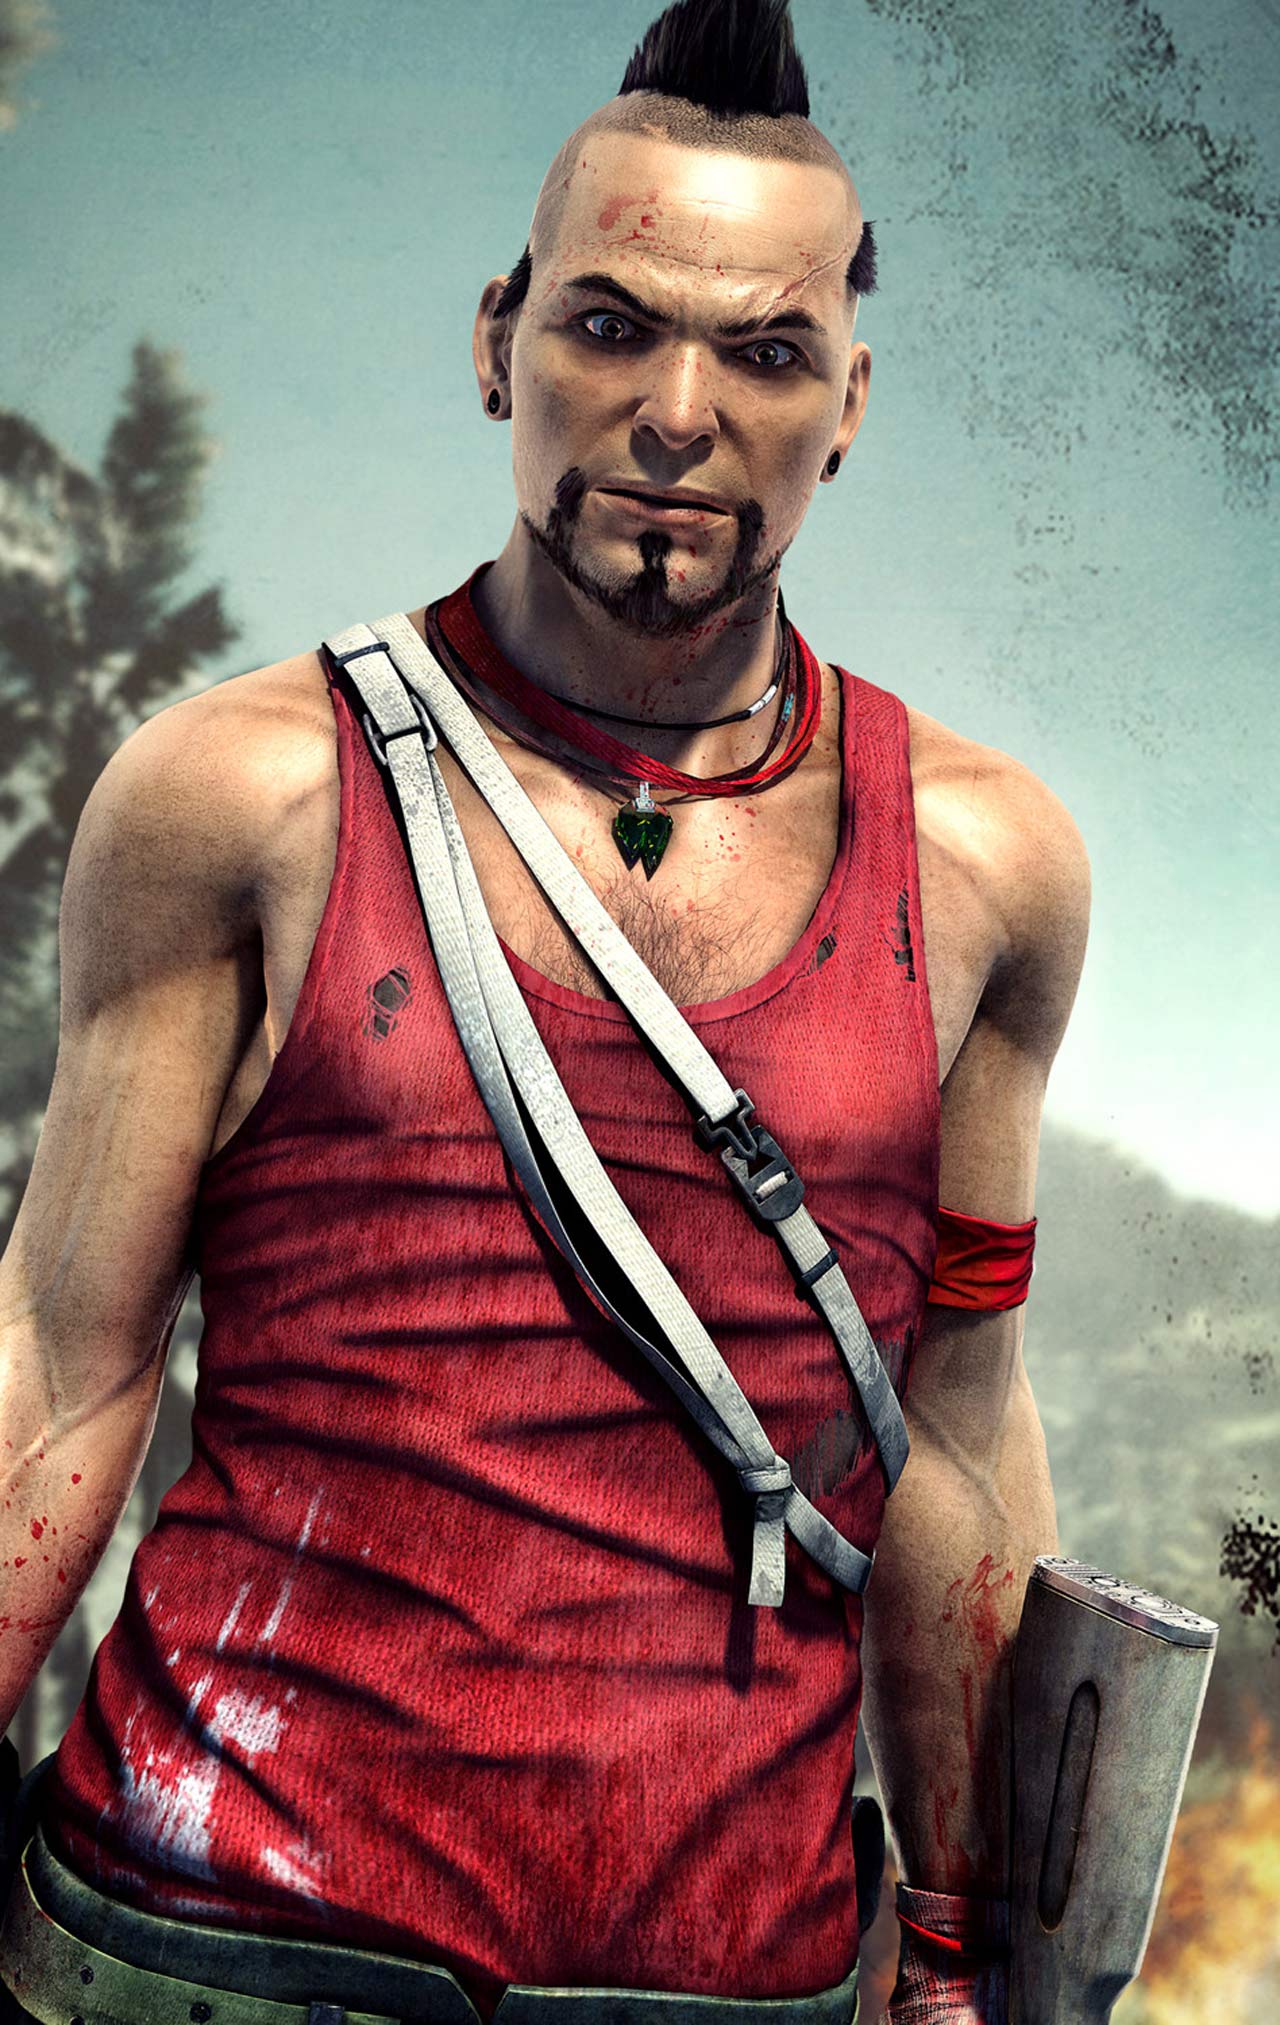 Far Cry 3'ün yeni görselleri yayımlandı